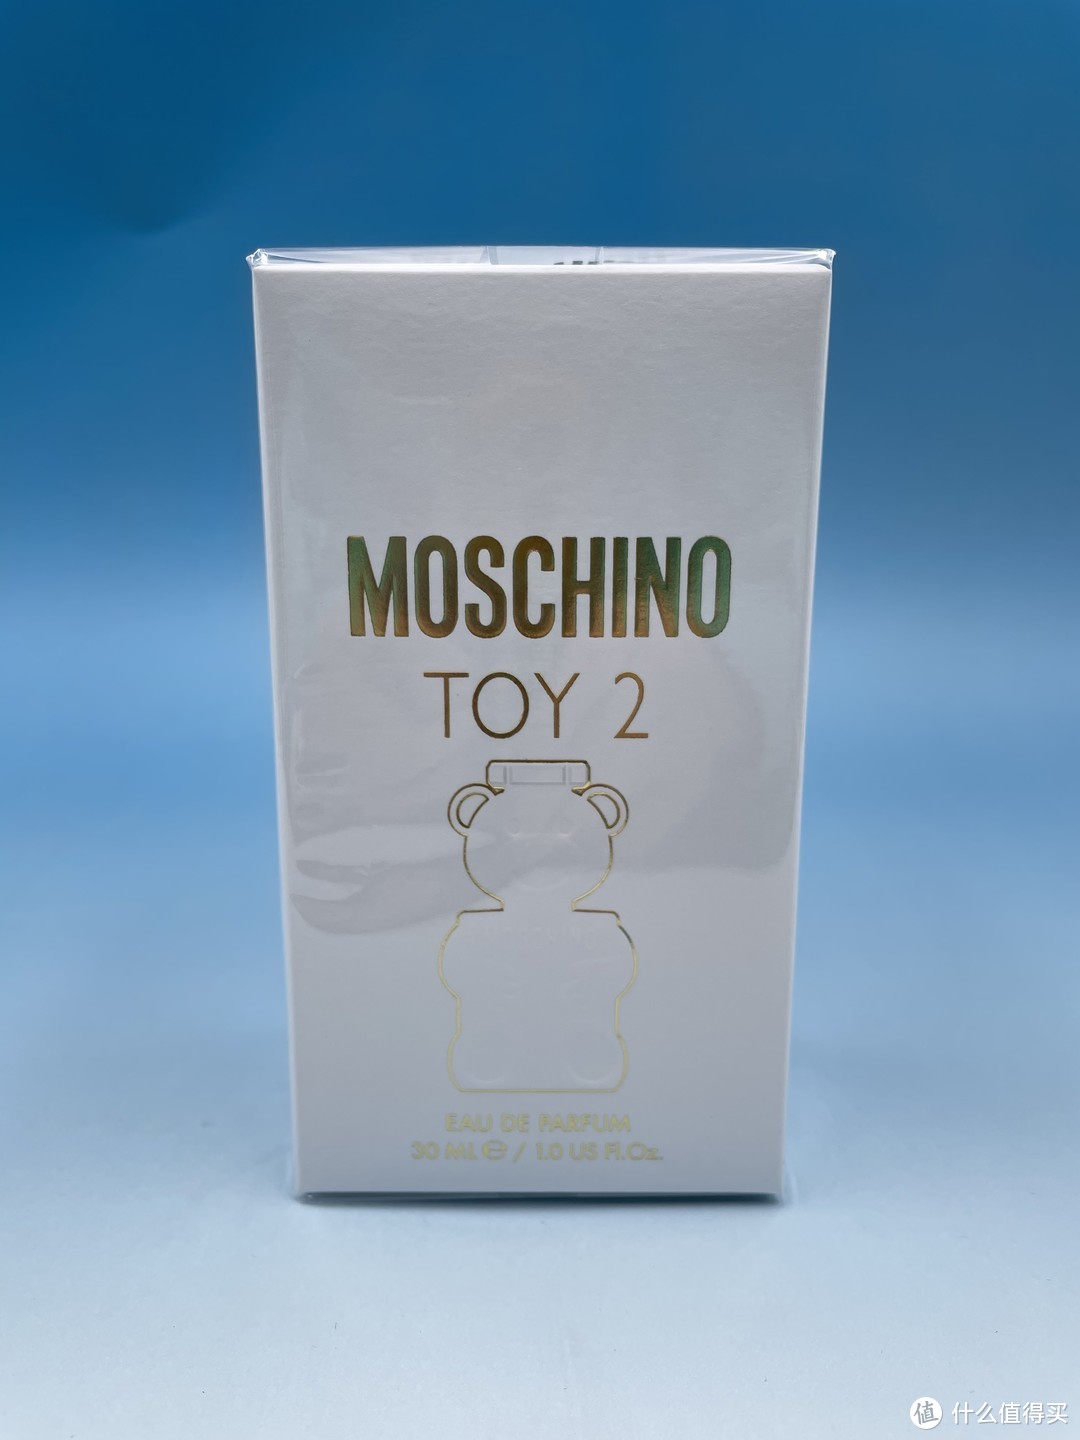 MOSCHINO TOY2——圣诞节不踩雷送礼好物，香水瓶也有高颜值